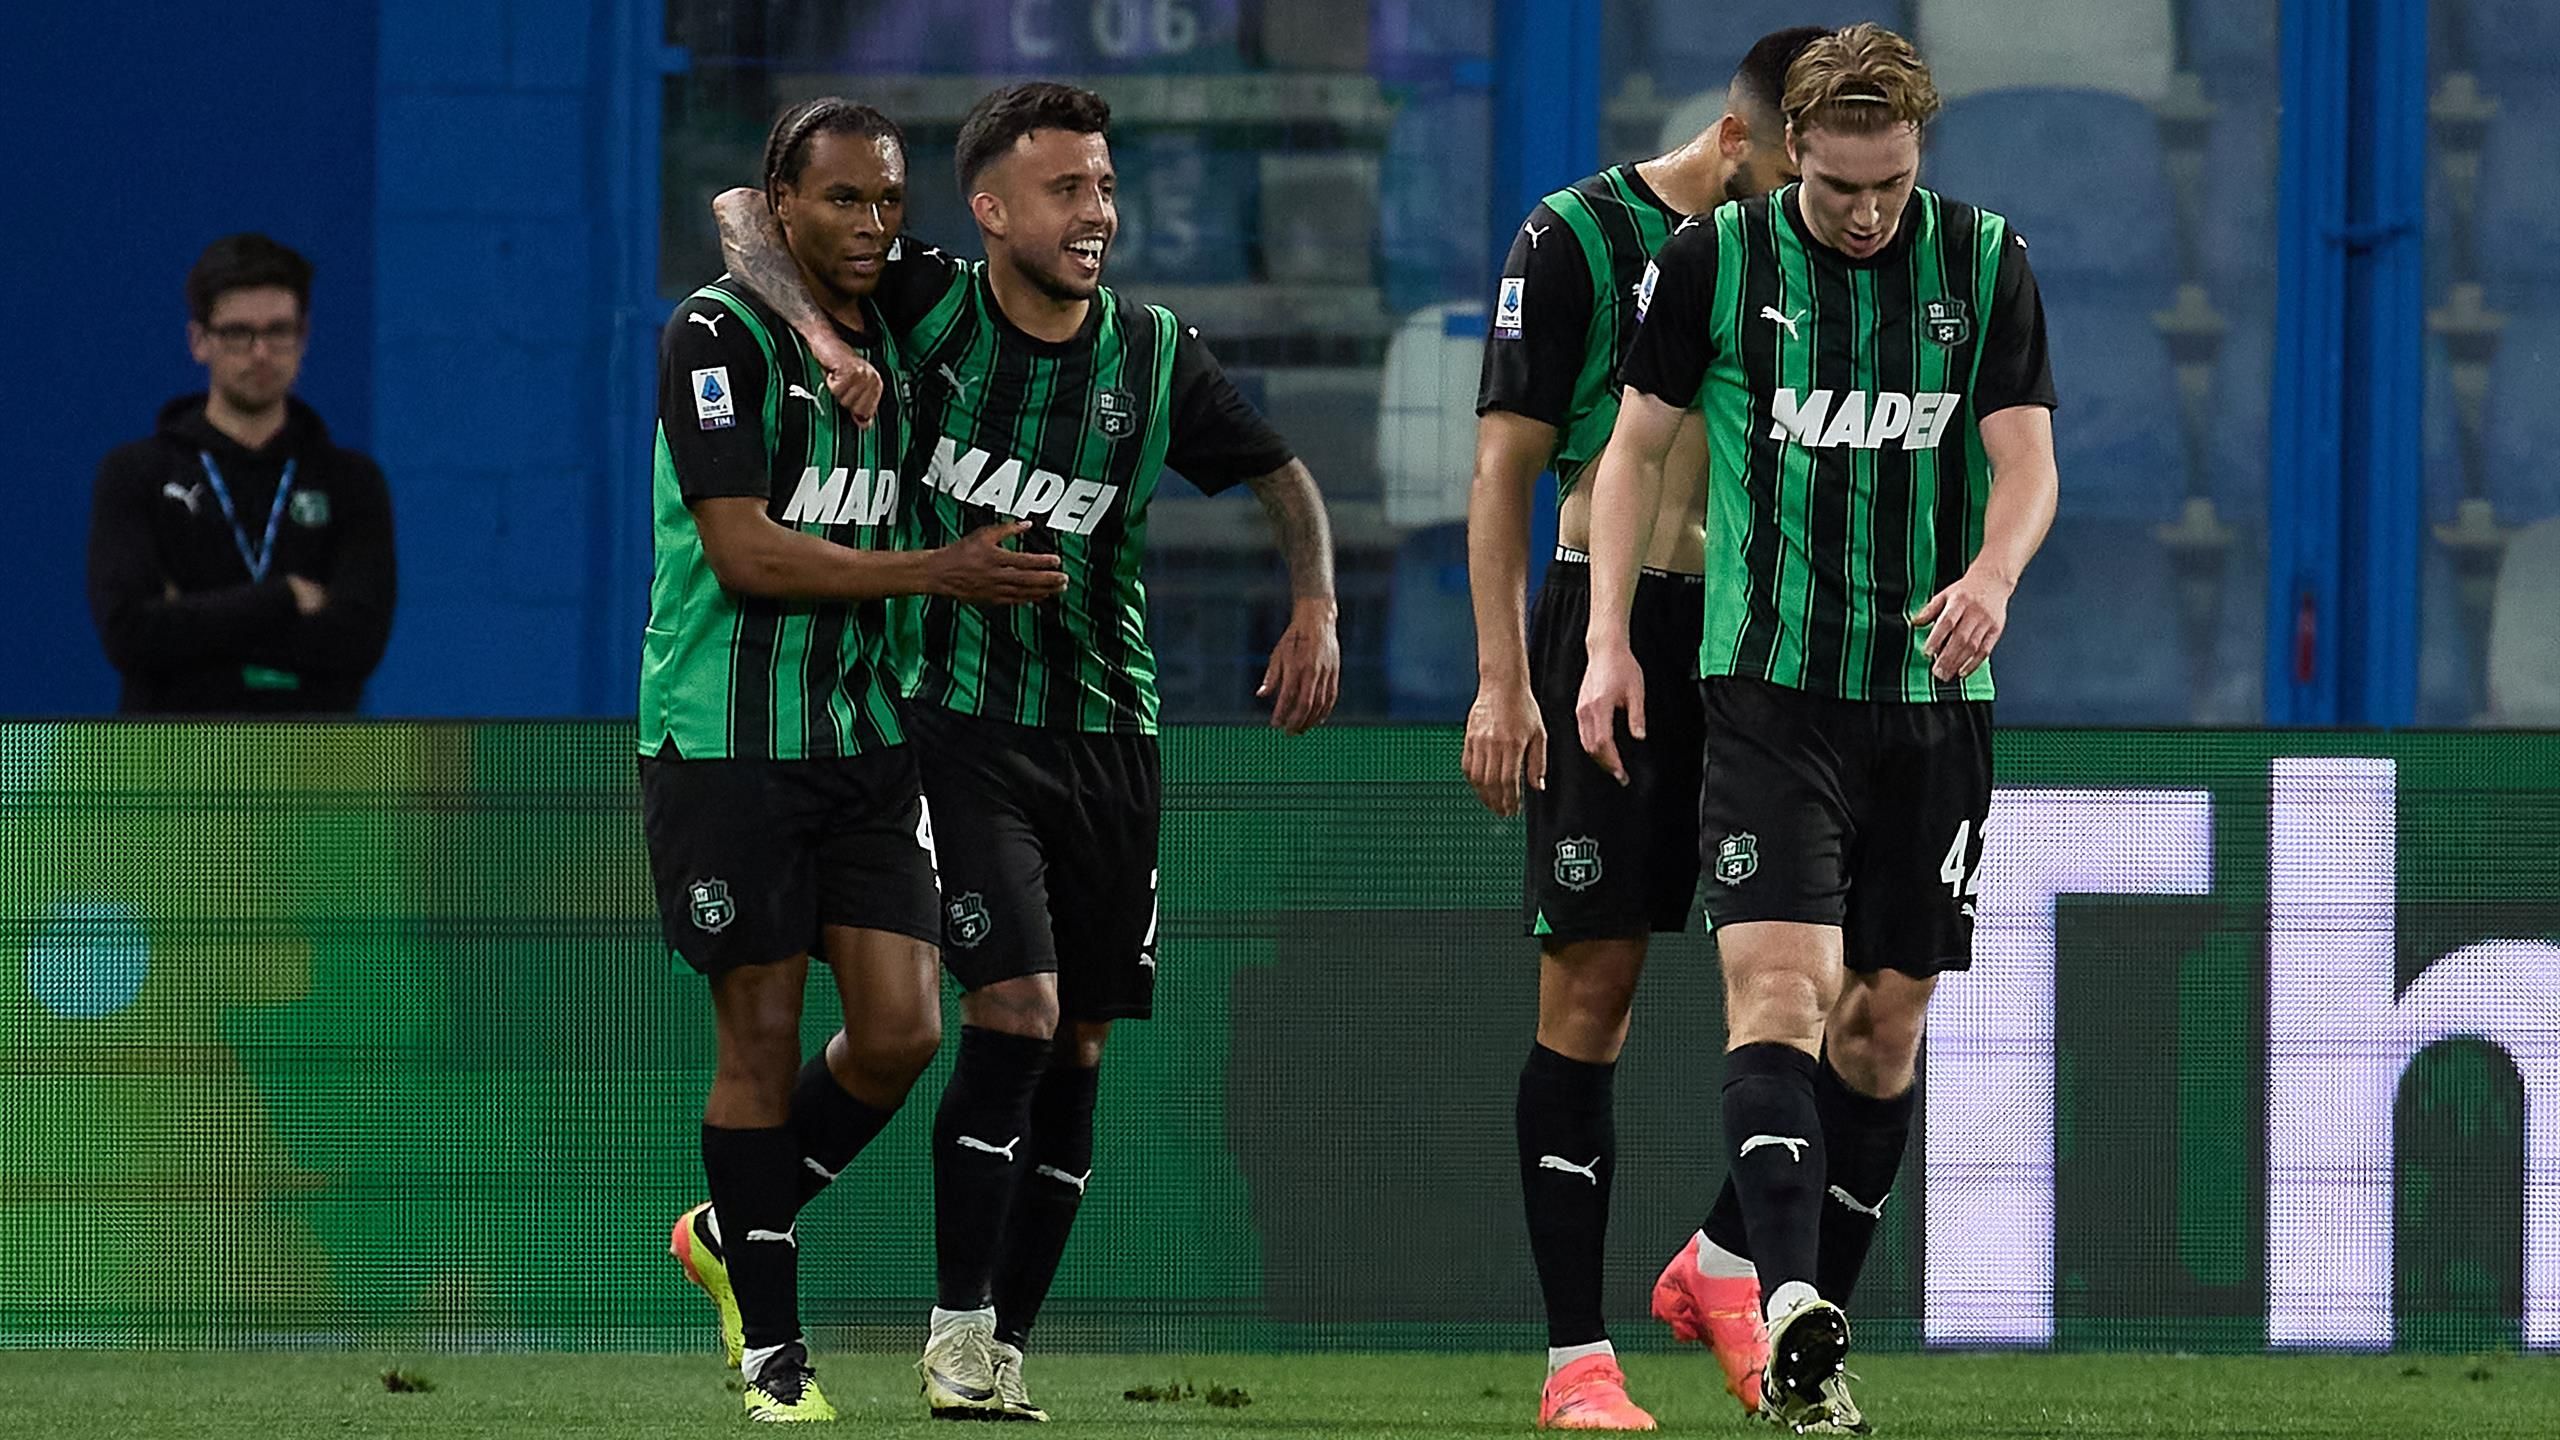 Inter scarica, il Sassuolo vince e spera nella salvezza: 1-0